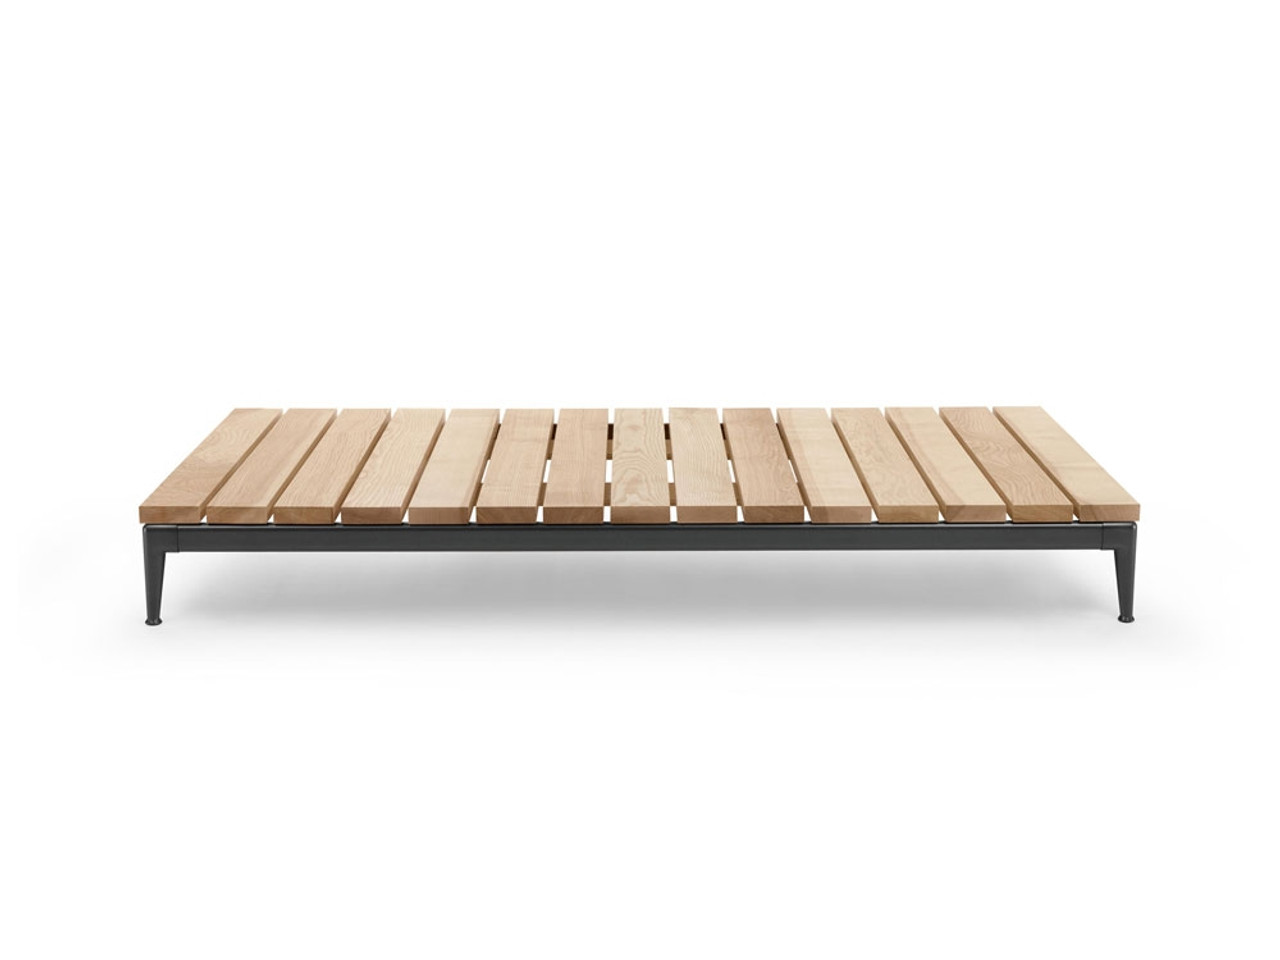 Pico Outdoor Coffee Tables by Flexform Design Team